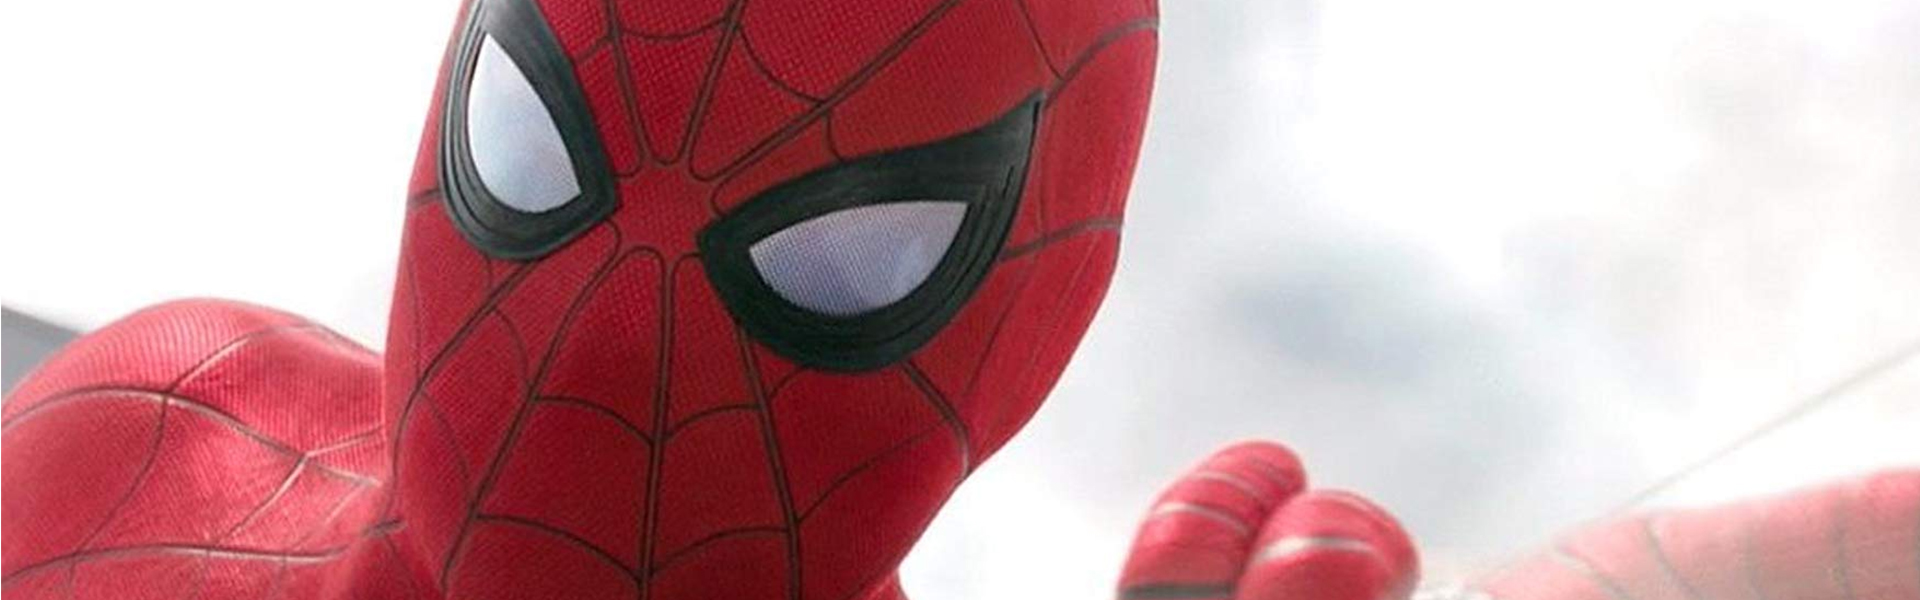 Spider-Man: Daleko od domu <span>(dubbing)</span>